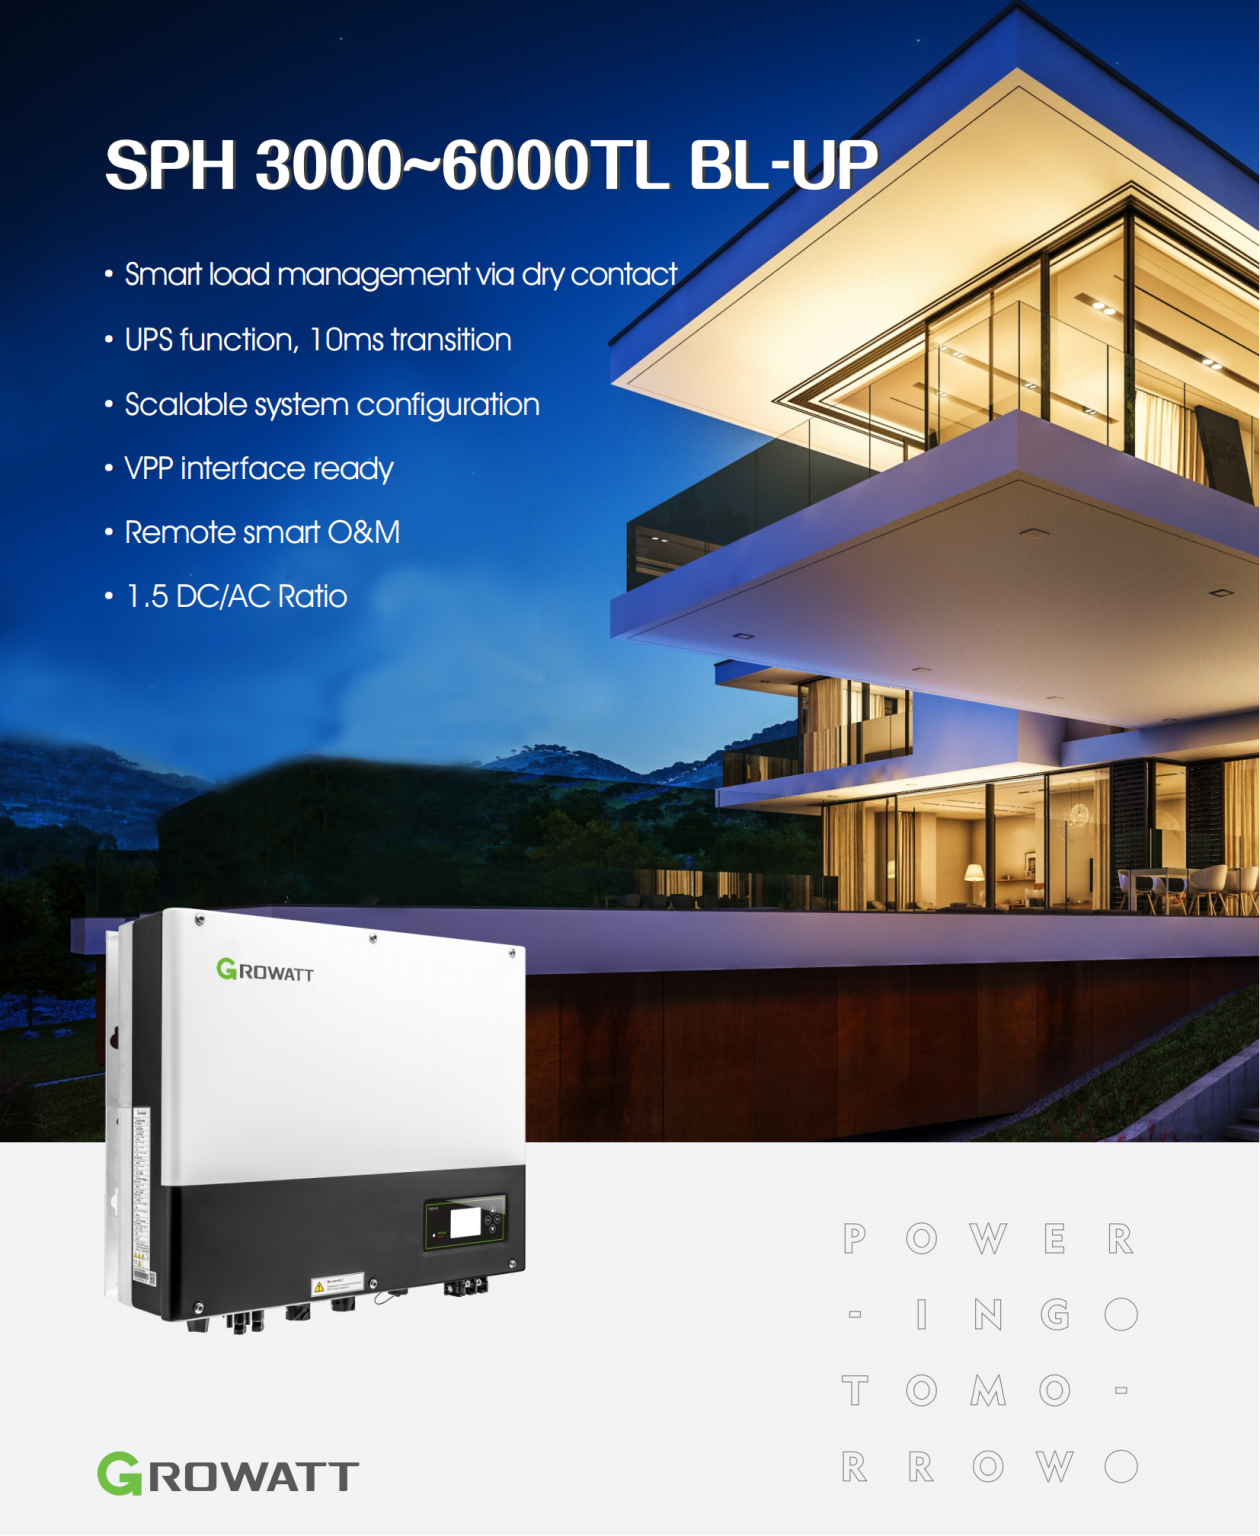 SPH 6000TL BL-UP Hybrid Inverter overview